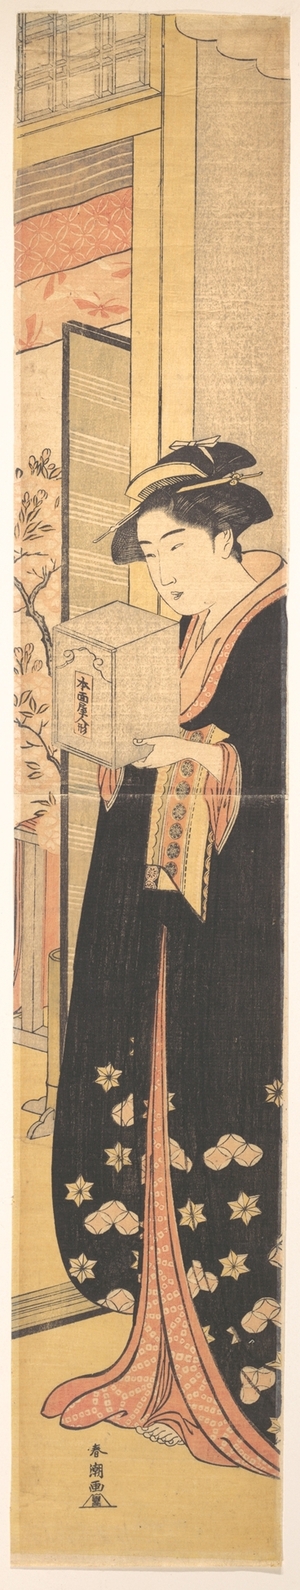 勝川春潮: Young Woman Carrying Box in Her Hands - メトロポリタン美術館